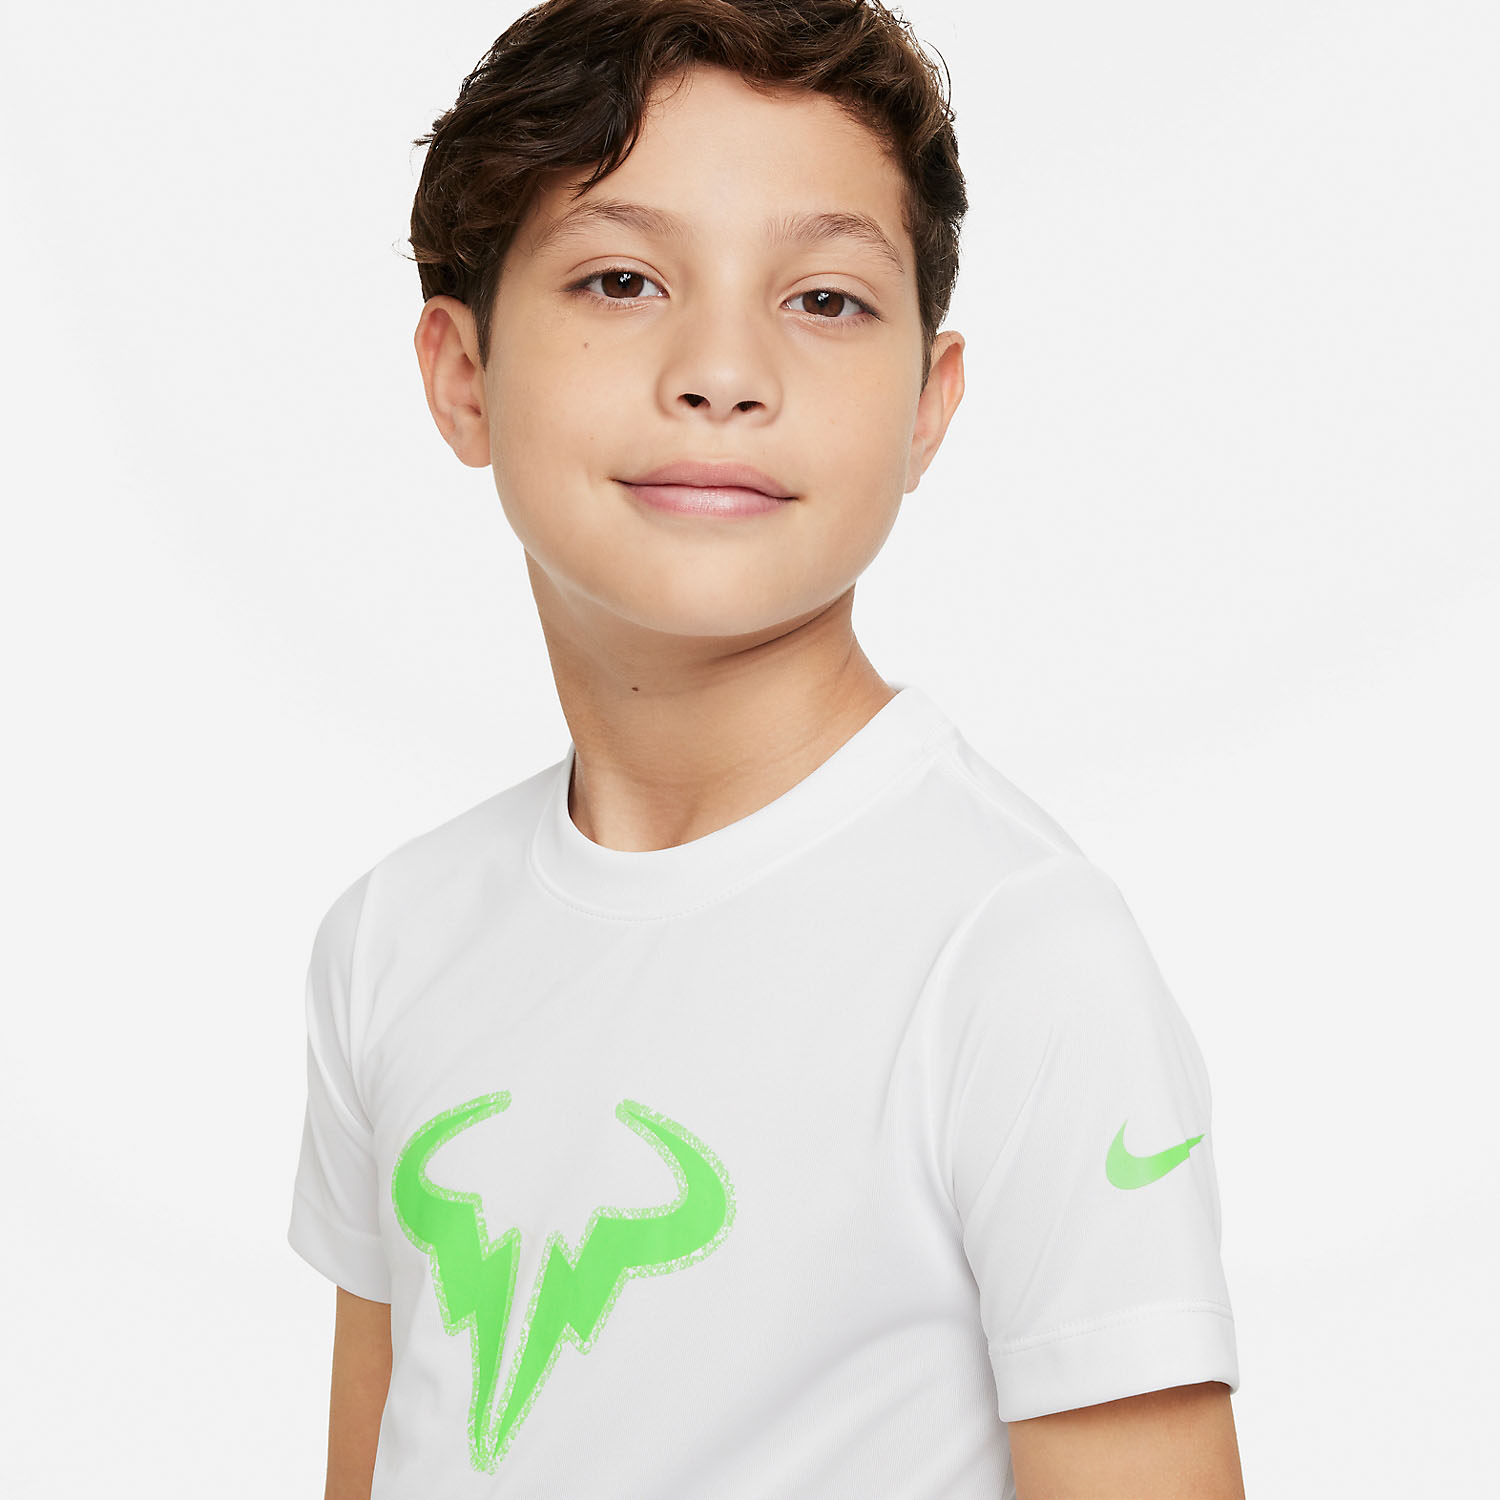 Nike Dri-FIT Rafa Camiseta Niño - White